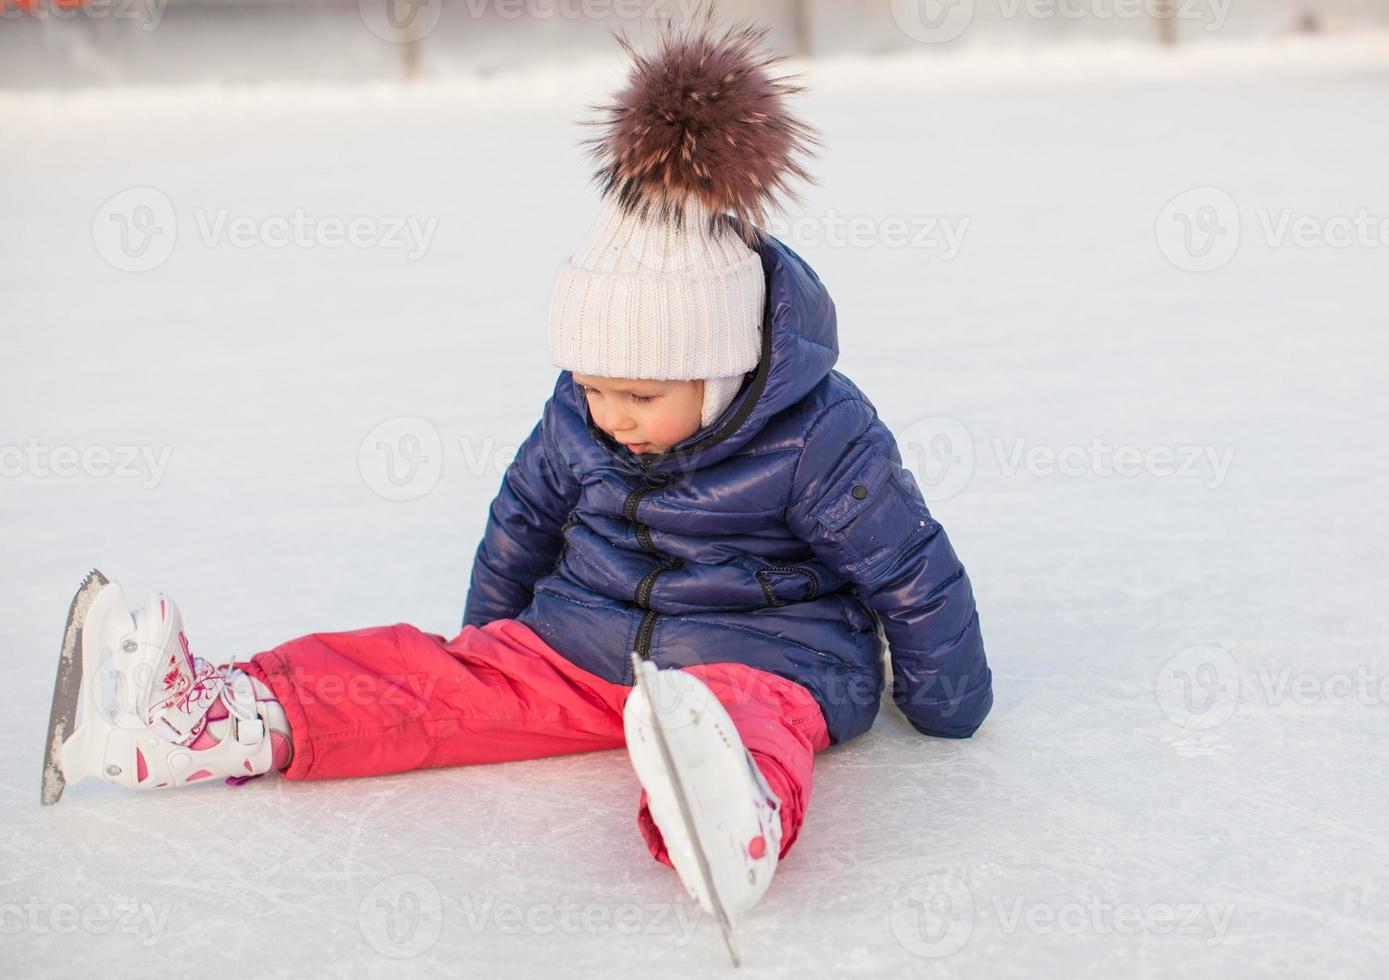 liten förtjusande flicka Sammanträde på is med skridskor efter de falla foto